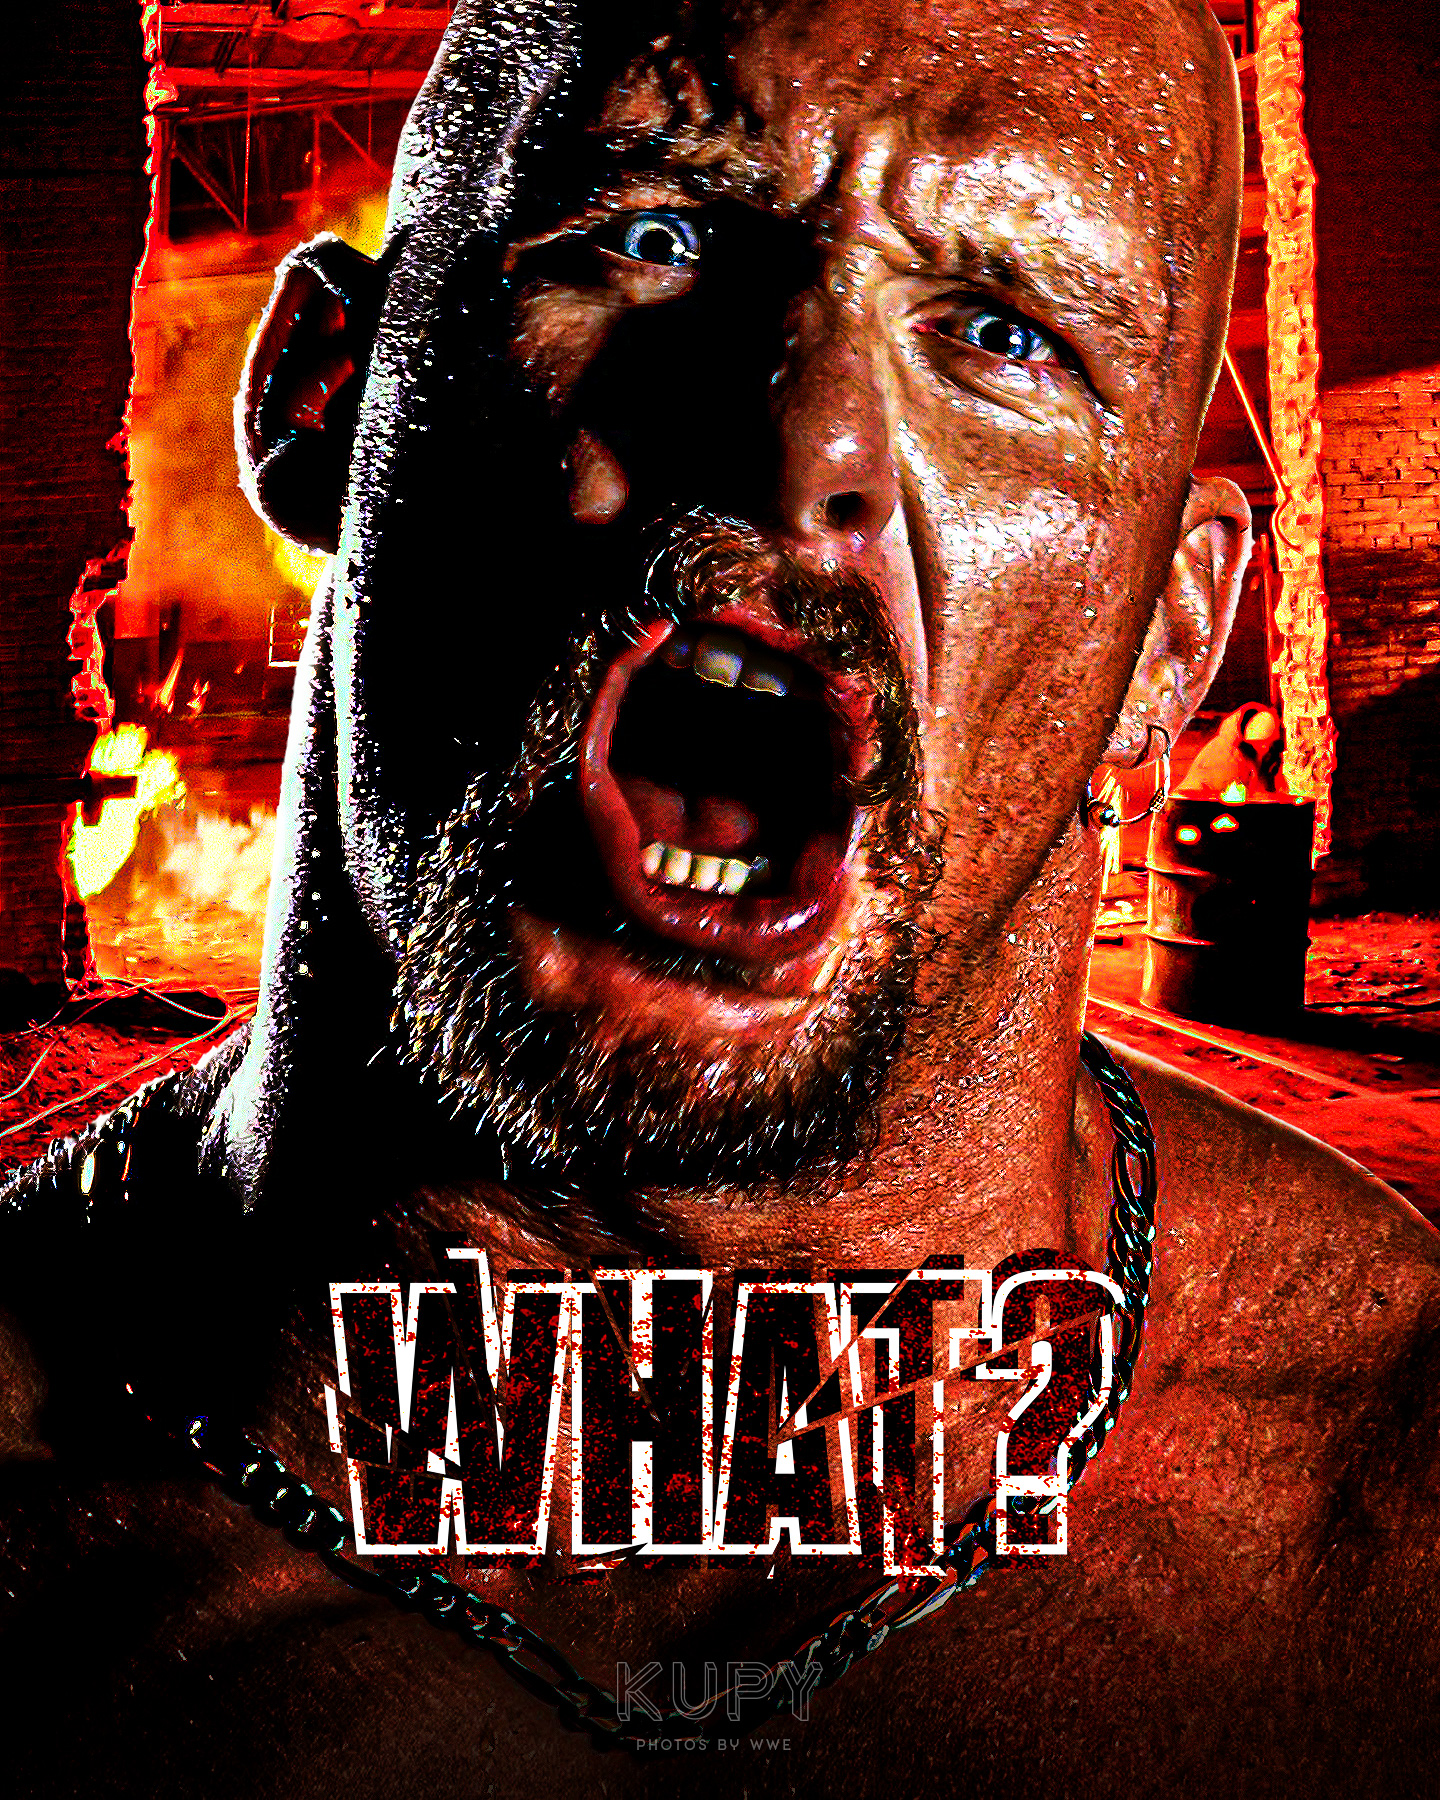 NEW Bray Wyatt “White Rabbit” 2022 logo wallpaper! - Kupy Wrestling  Wallpapers